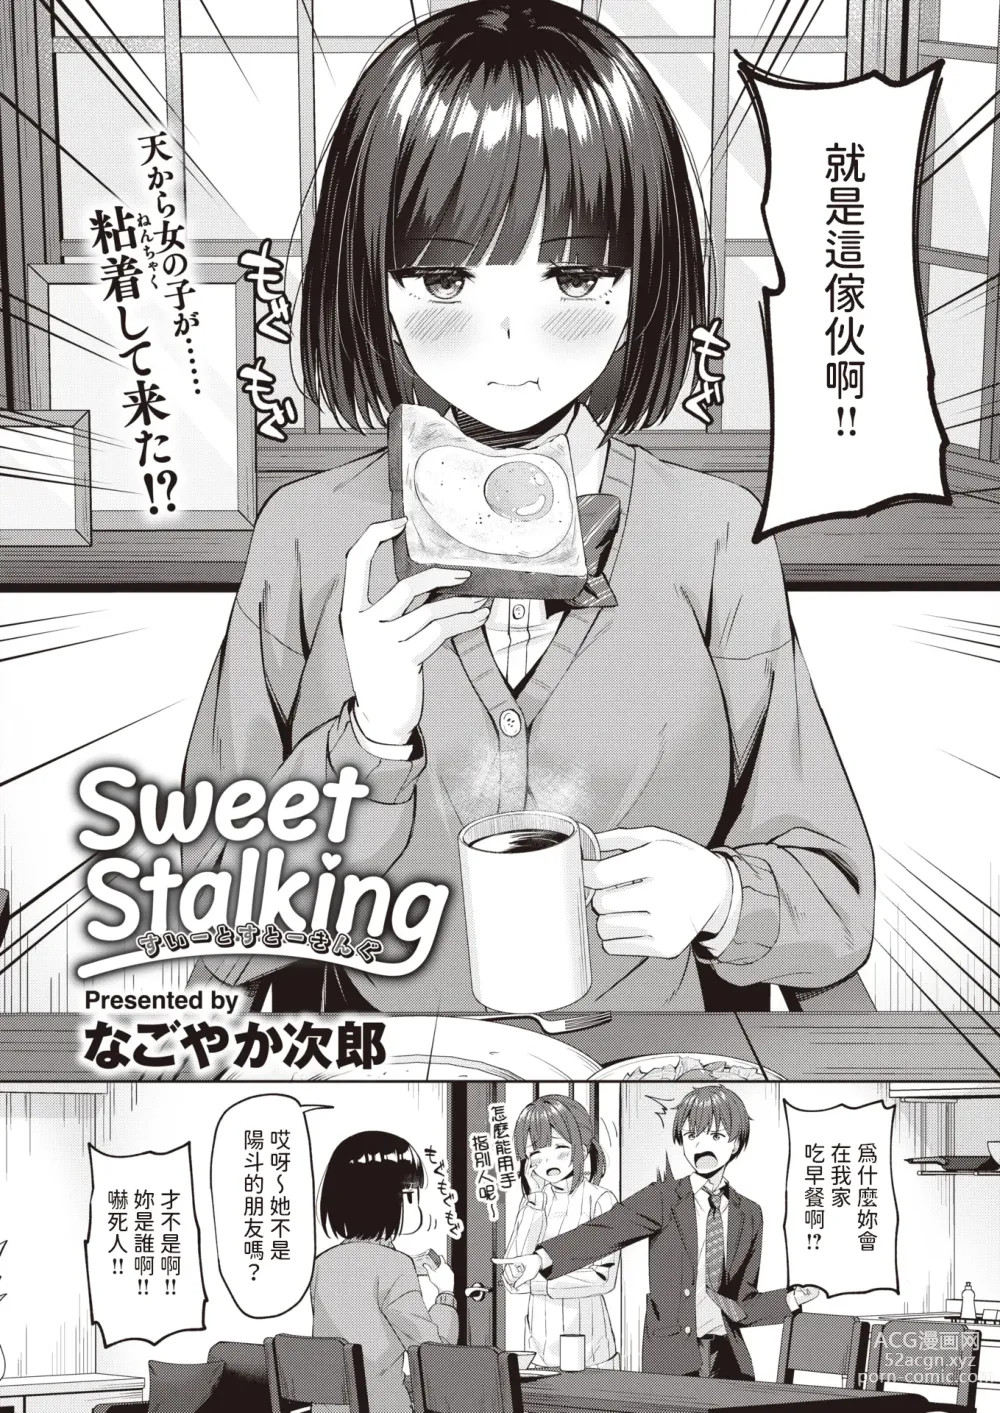 Page 2 of manga Sweet Stalking